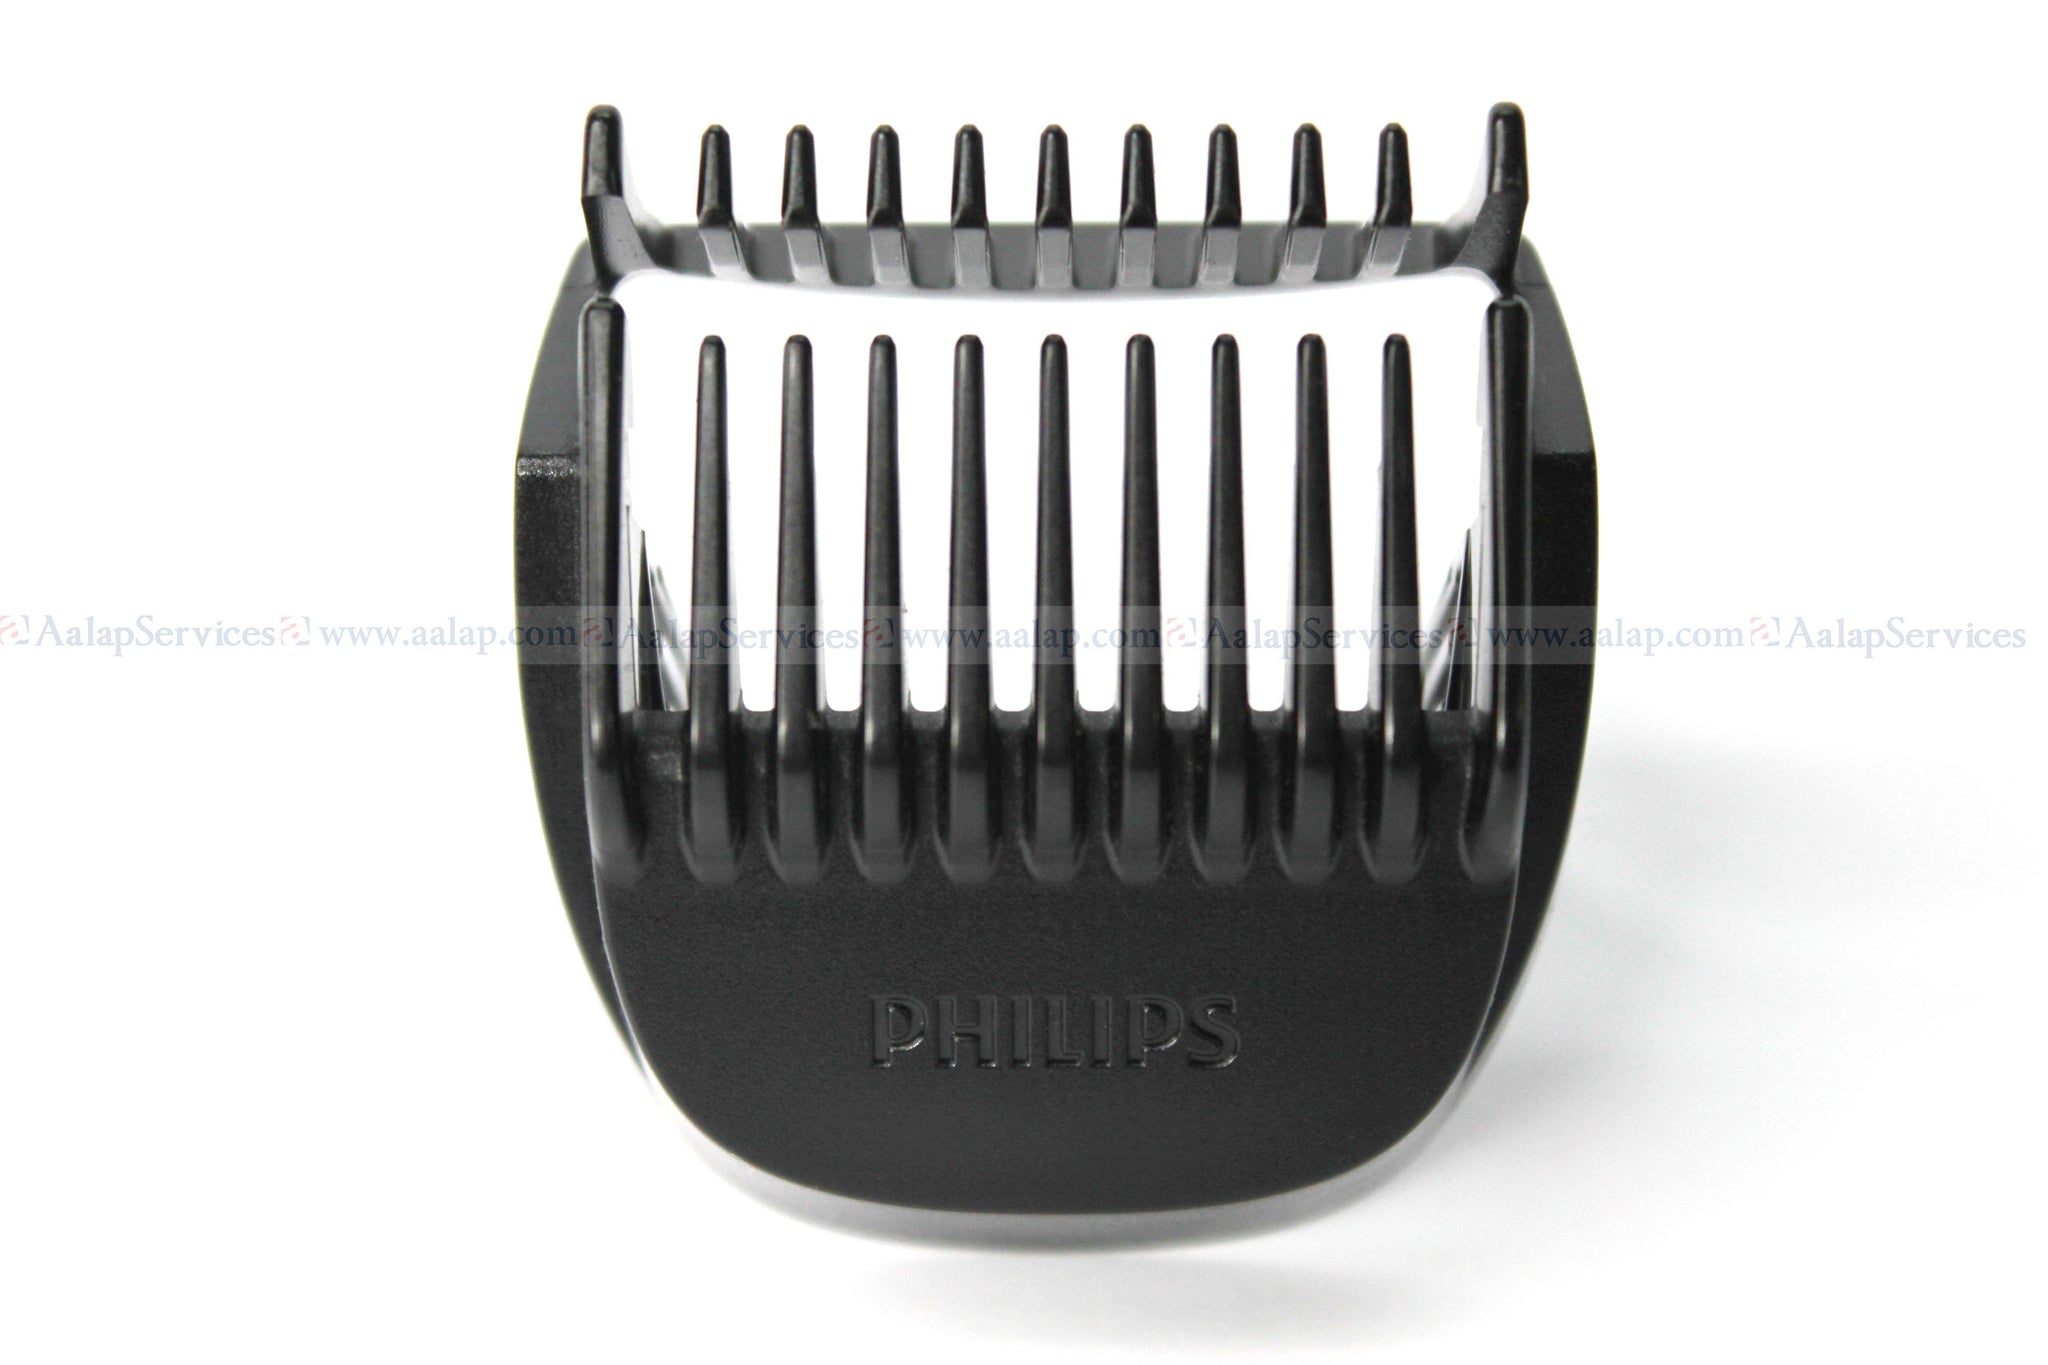 philips bt3205 beard trimmer